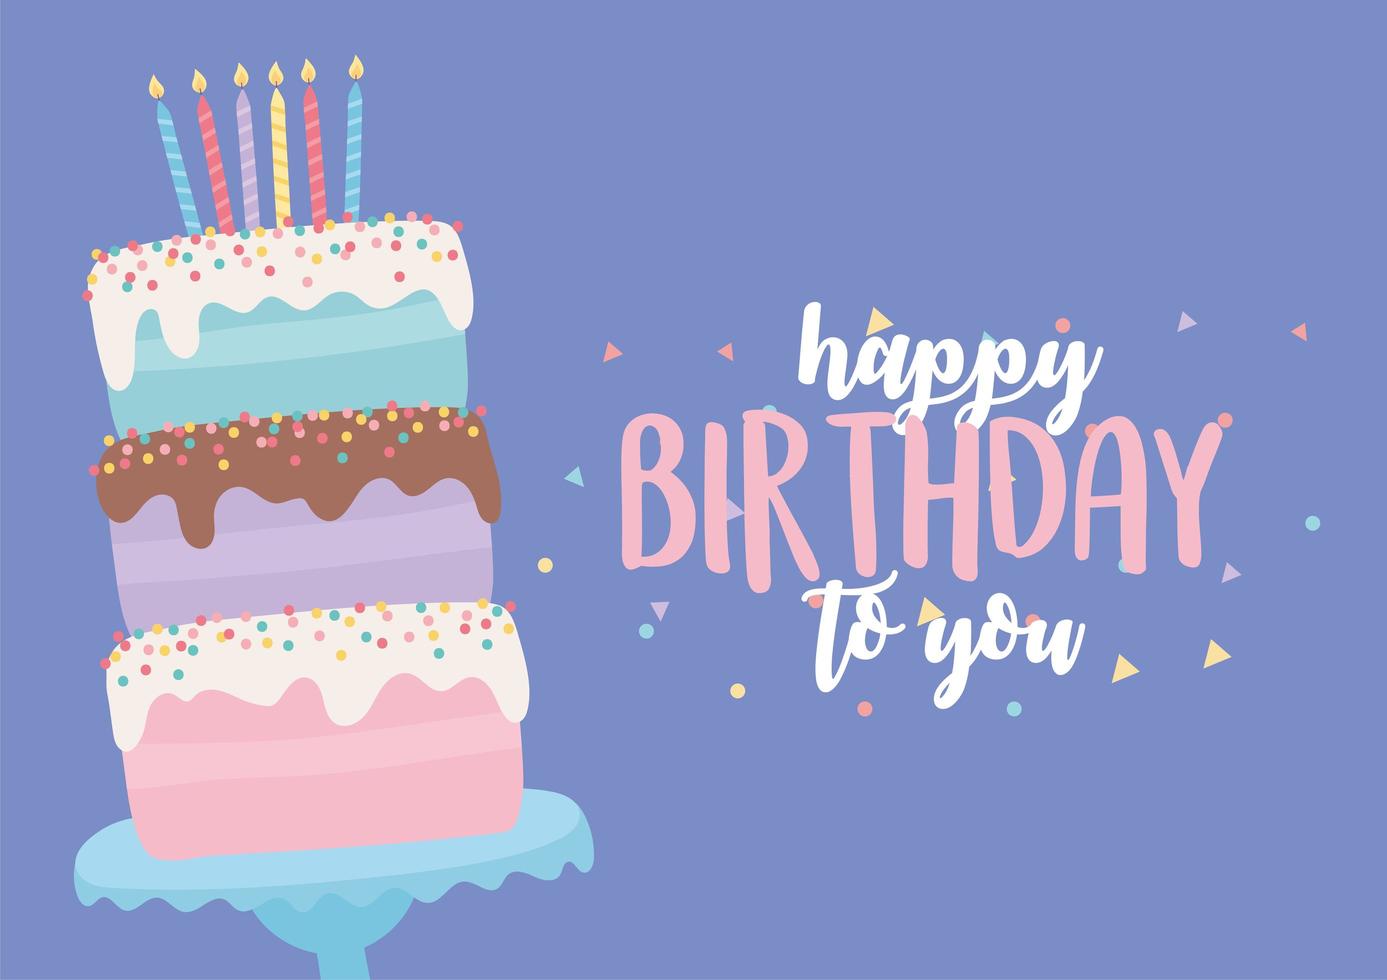 buon compleanno, torta dolce con candele e scritta decorazione festa celebrazione decoration vettore